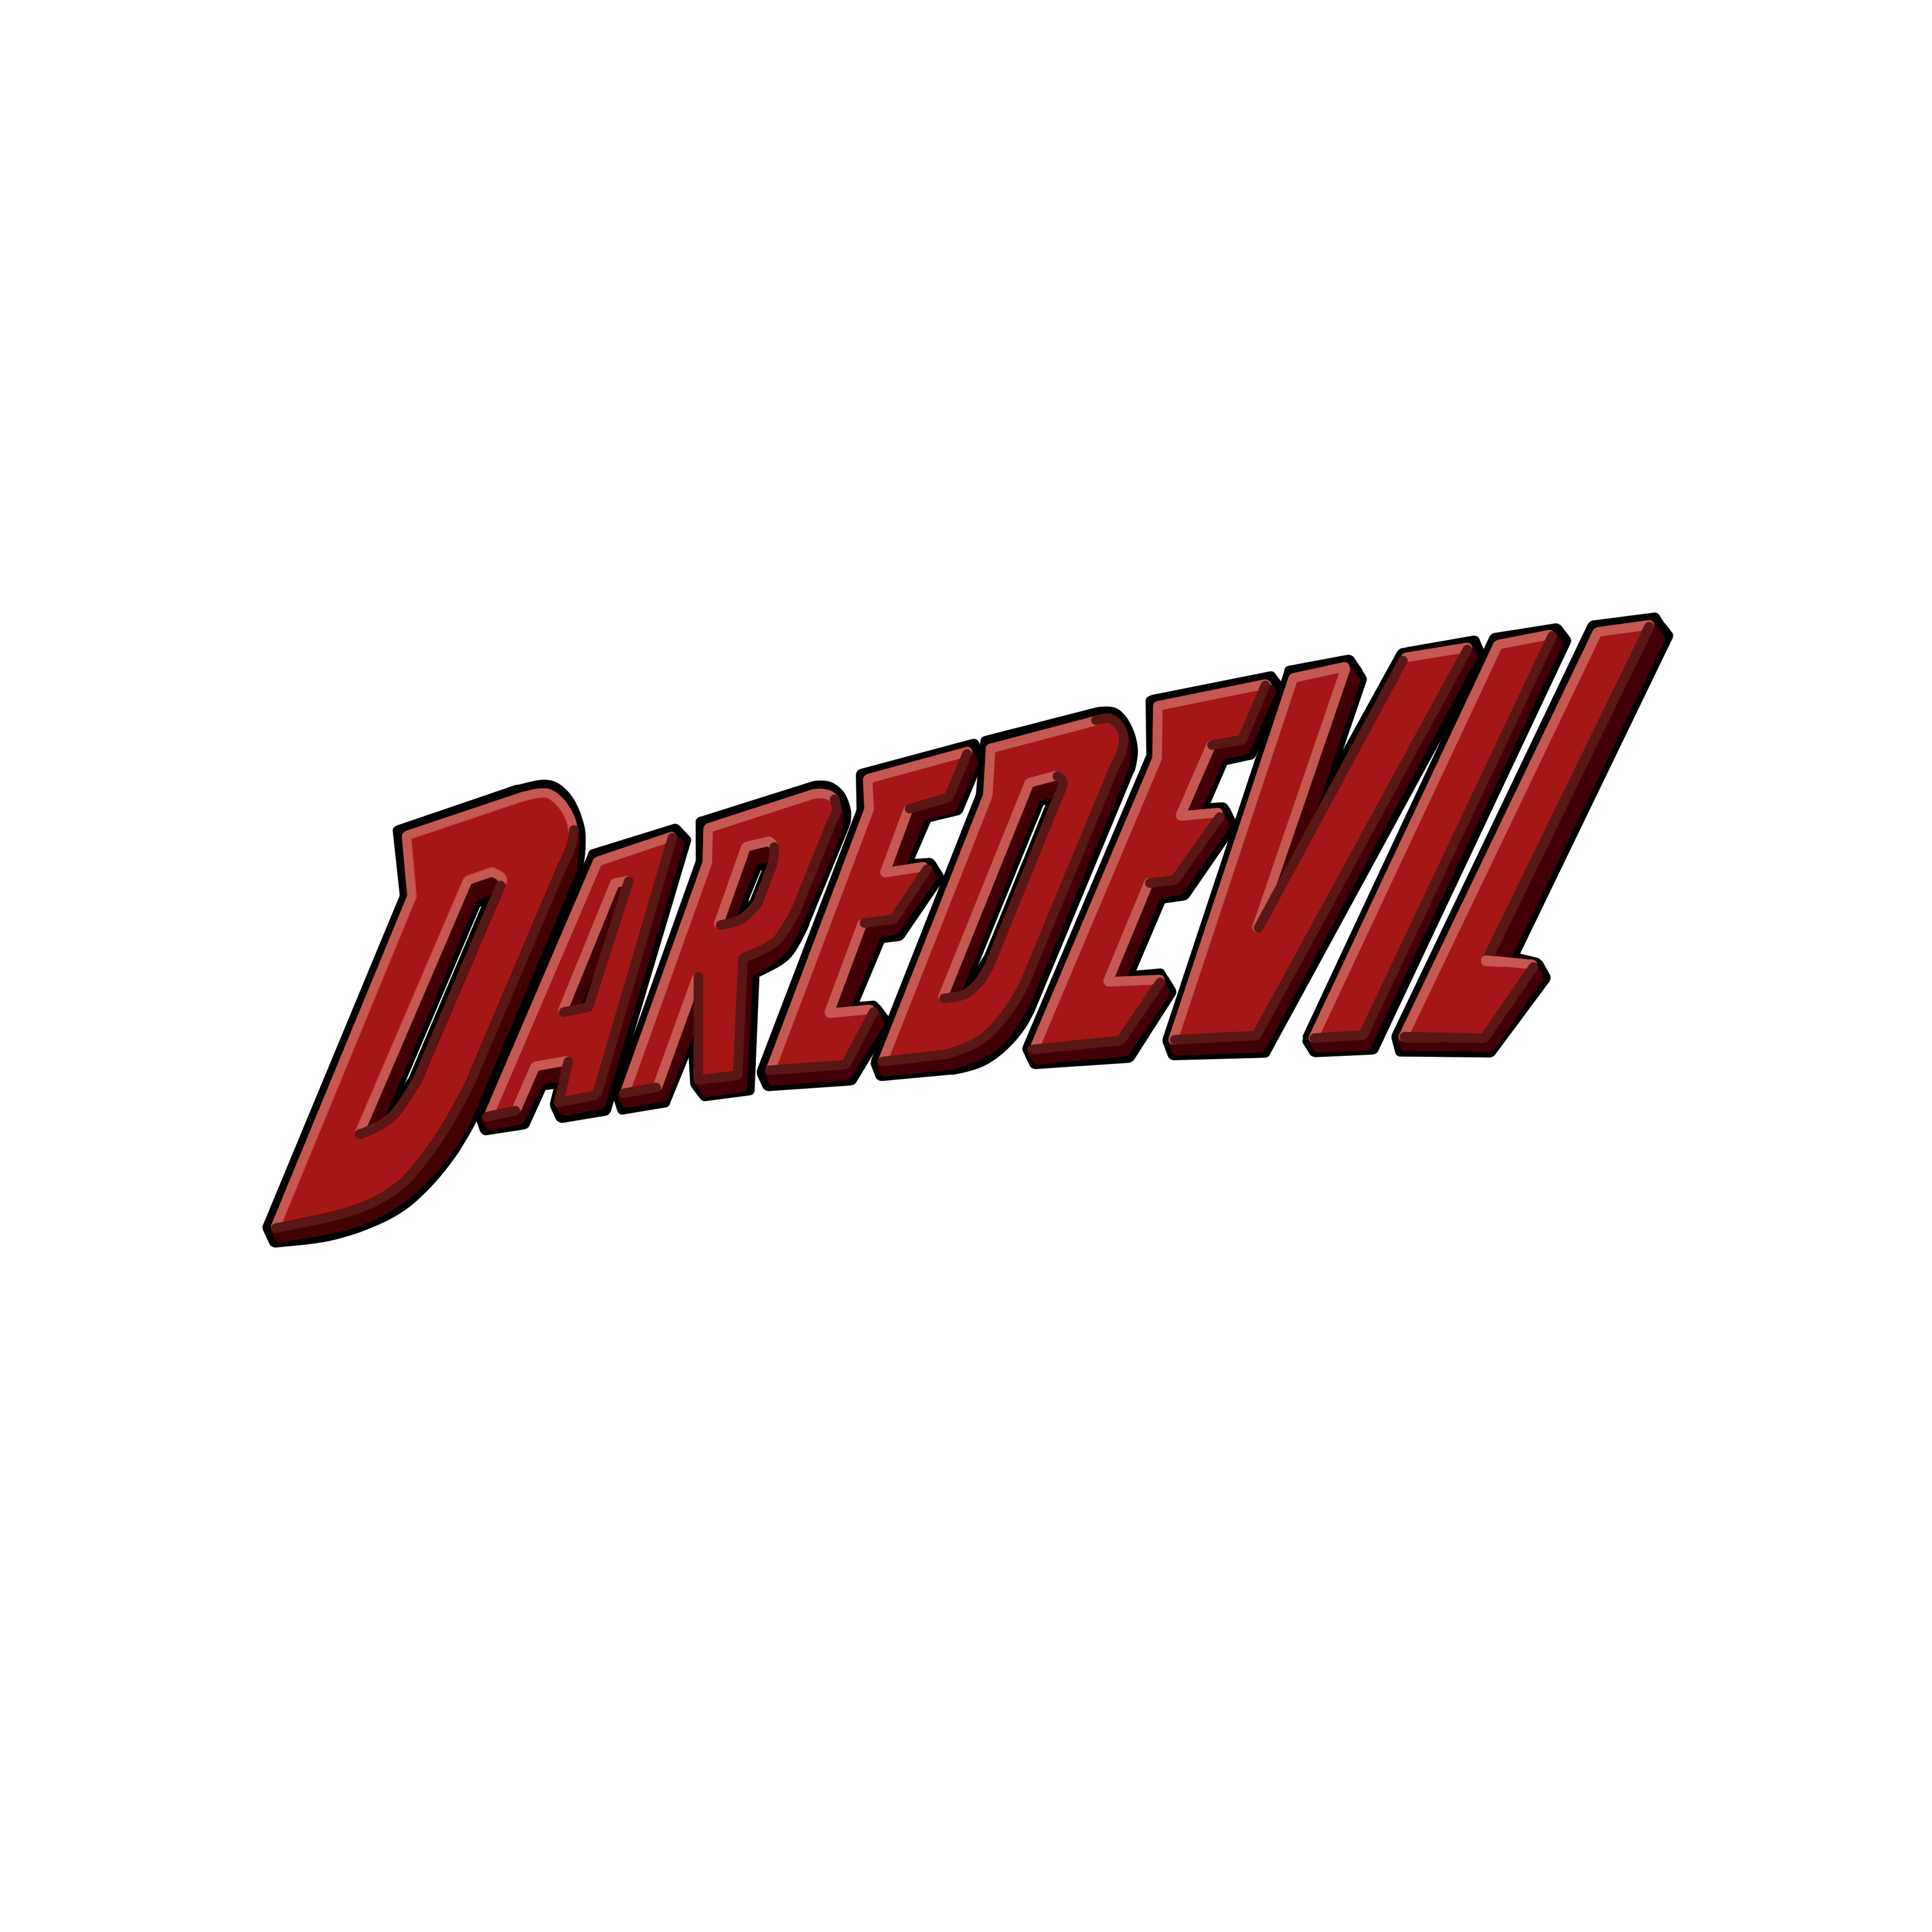 Daredevil Transparent Background PNG Image